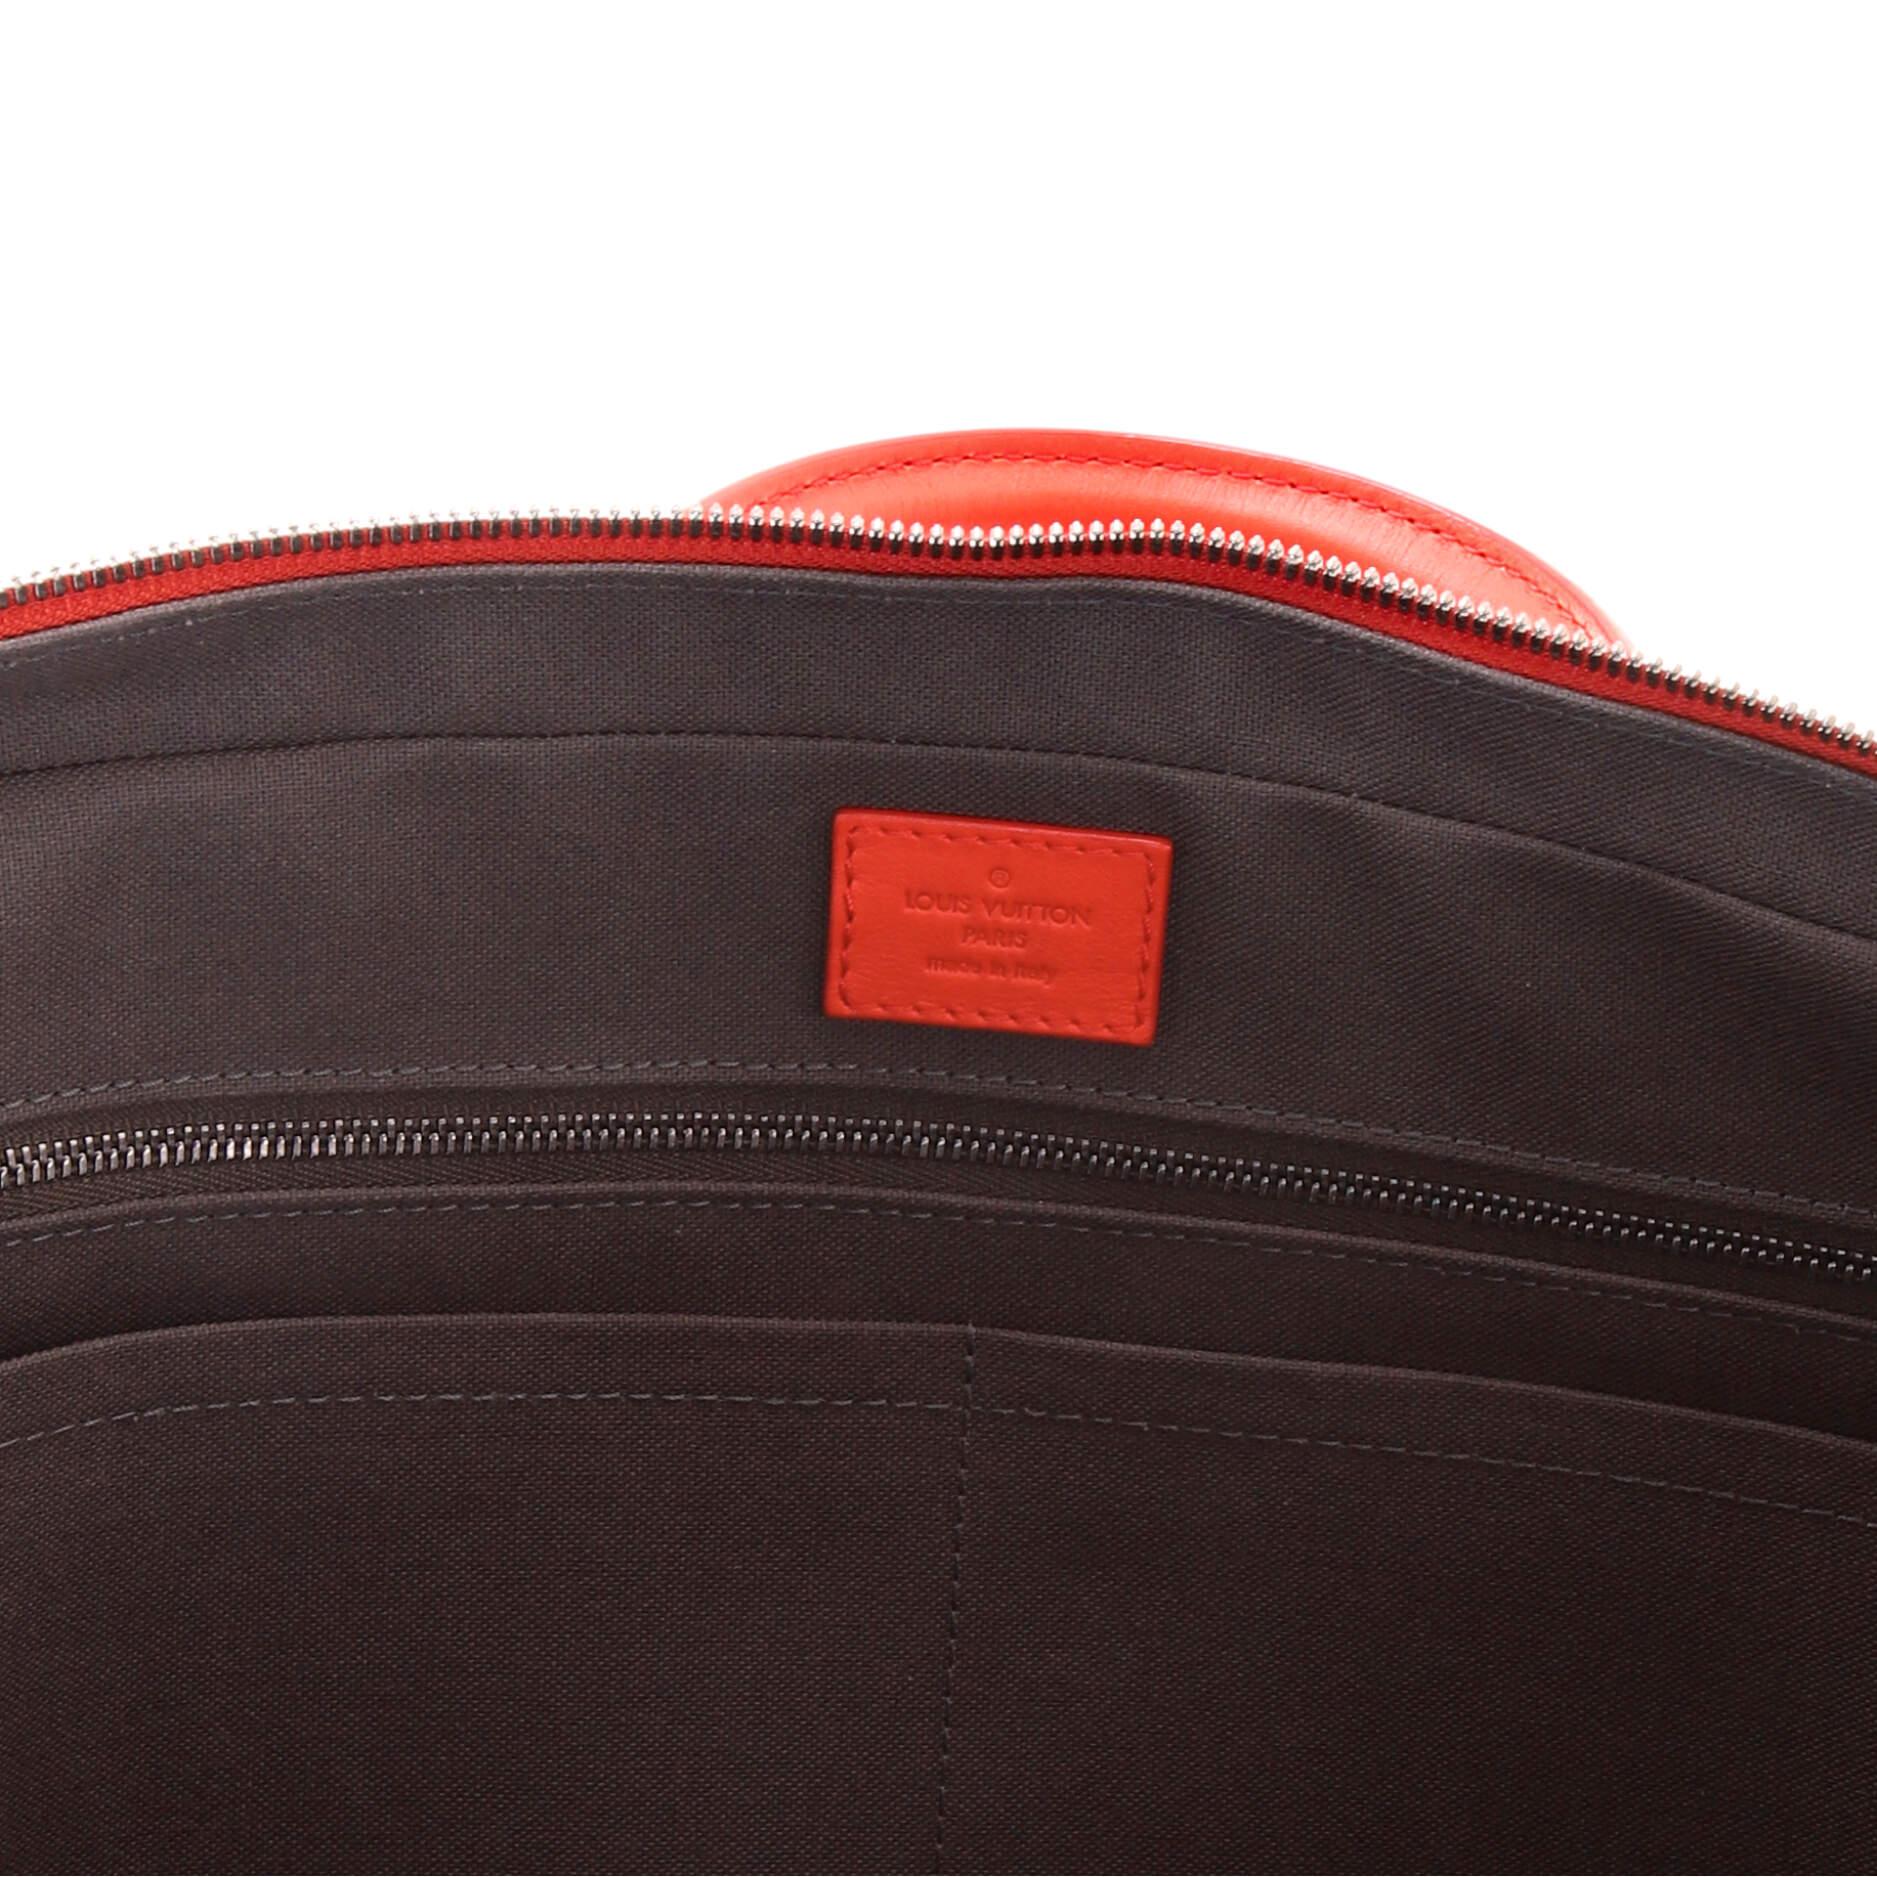 Louis Vuitton Porte-Documents Voyage Briefcase Damier Infini Leather 2